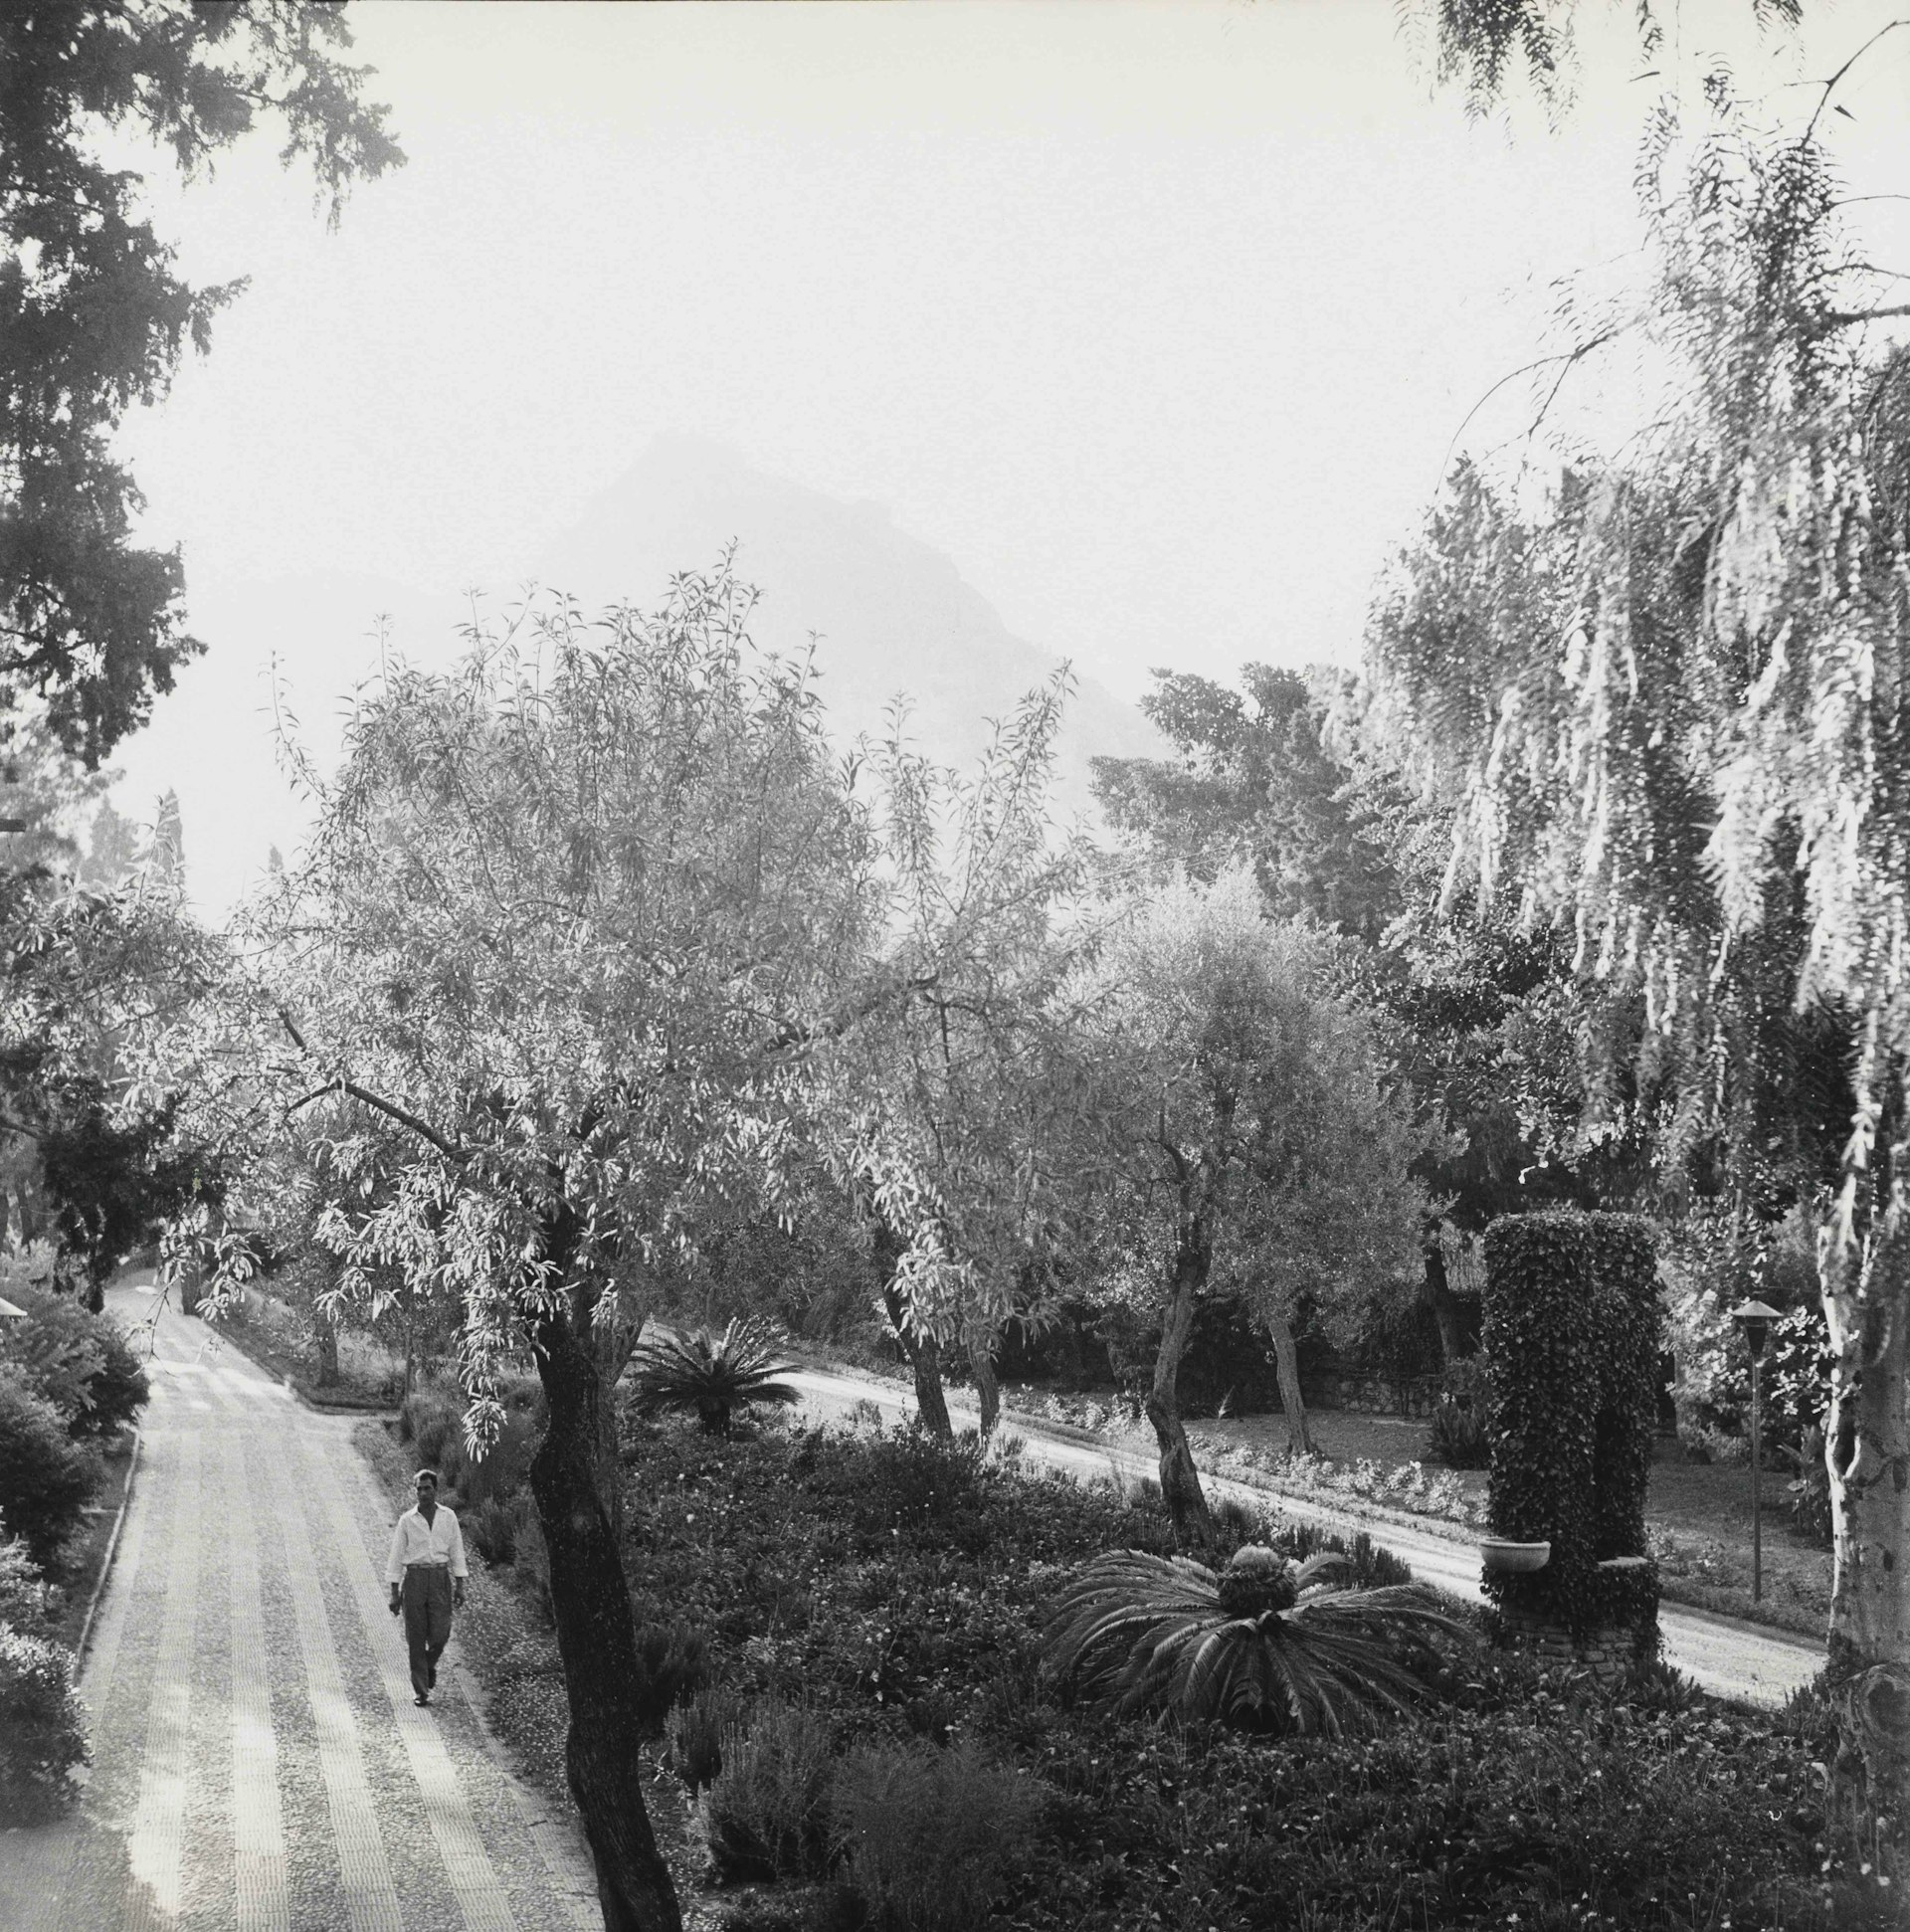 Public Garden, Taormina, Sicily, 1959